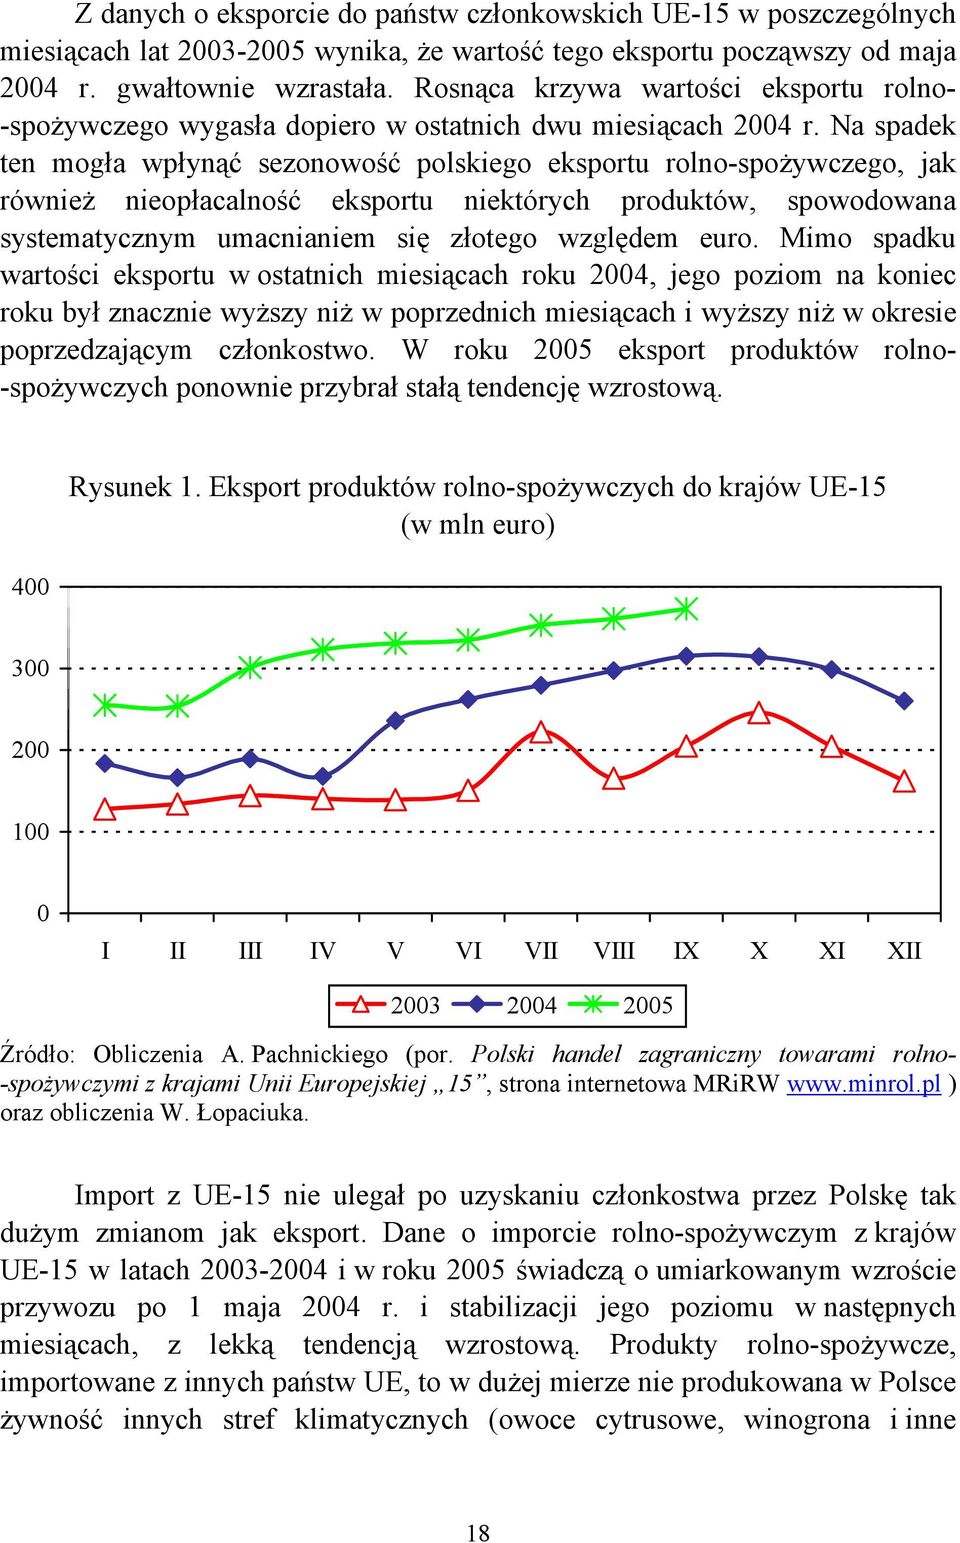 Na spadek ten mogła wpłynąć sezonowość polskiego eksportu rolno-spożywczego, jak również nieopłacalność eksportu niektórych produktów, spowodowana systematycznym umacnianiem się złotego względem euro.